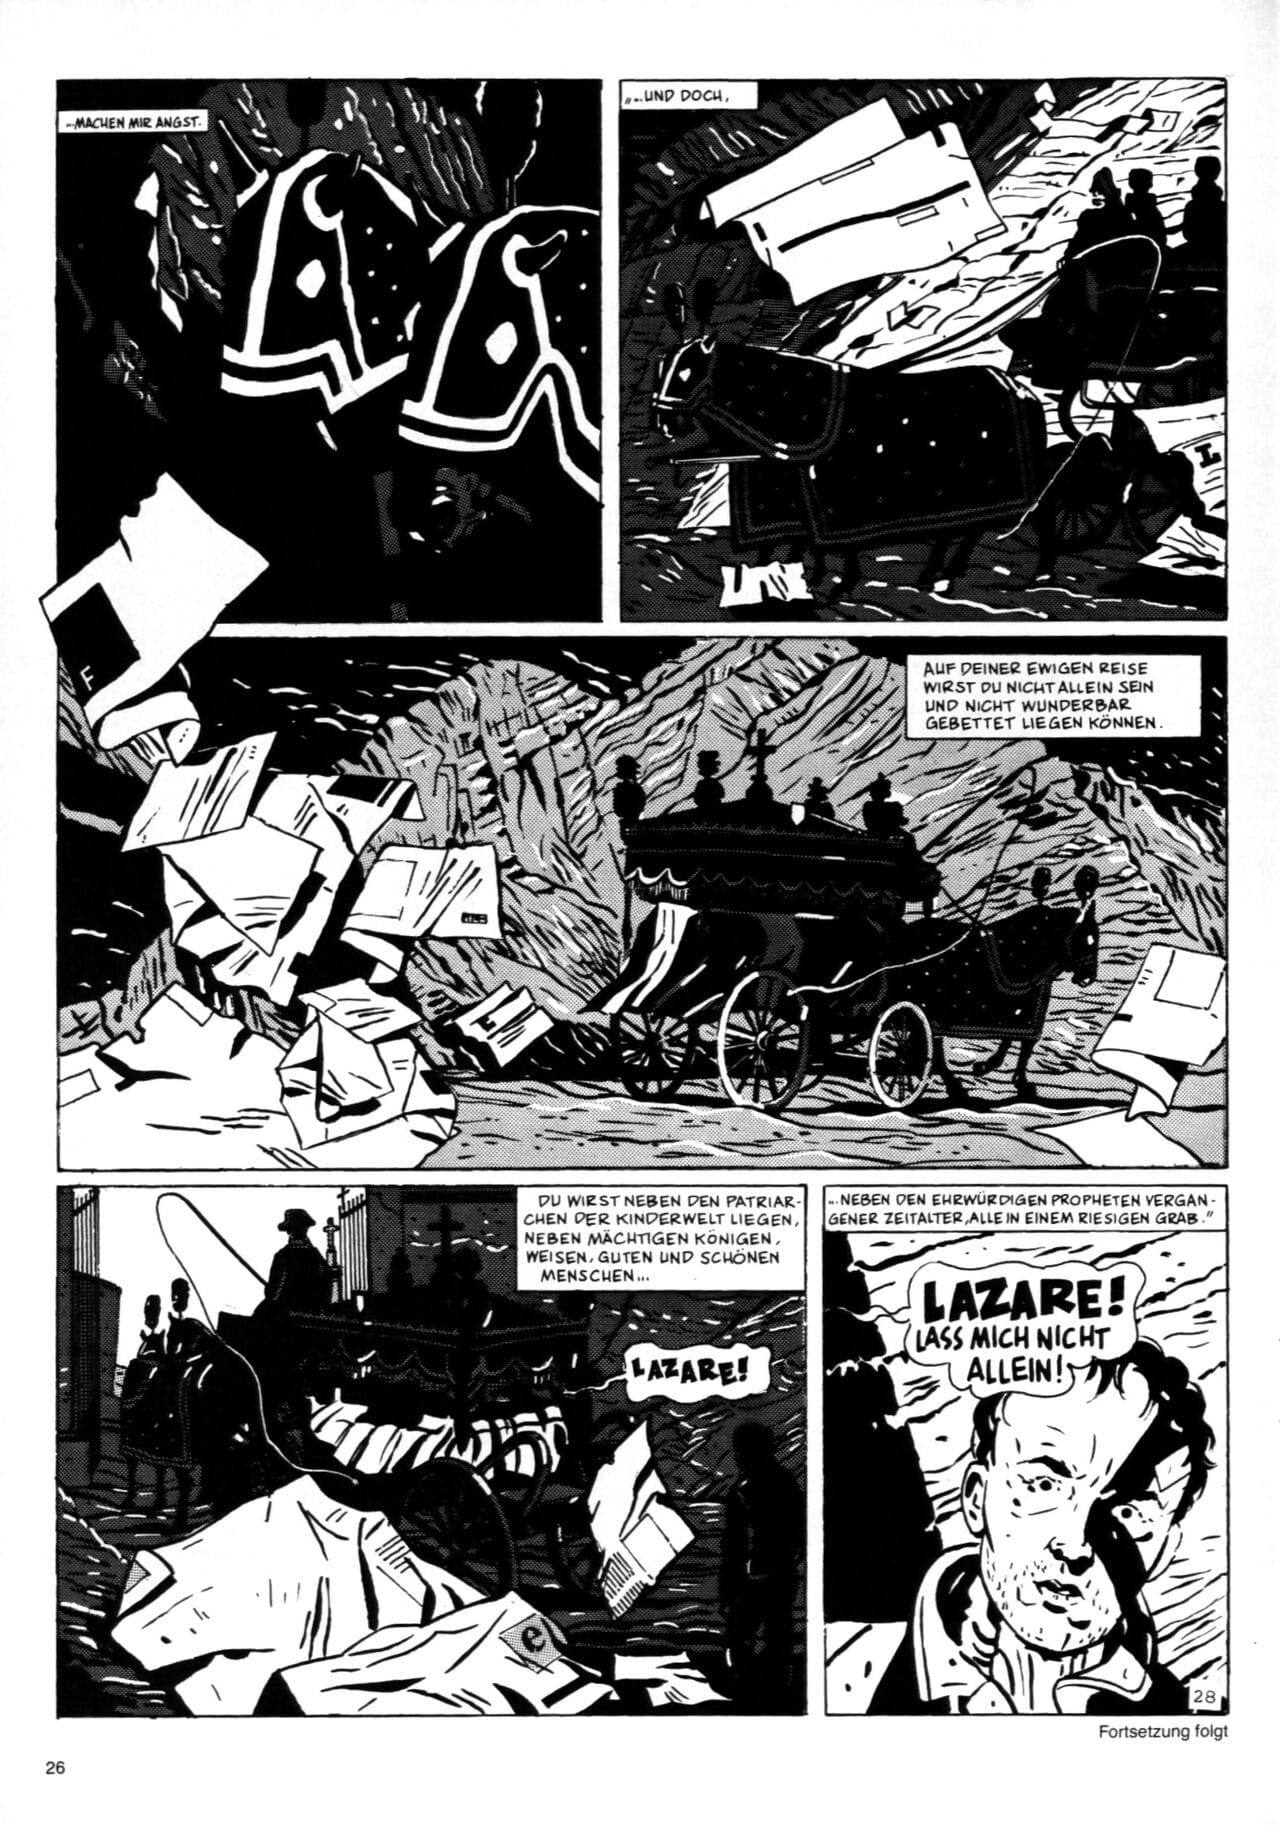 schwermetall #095 część 2 page 1